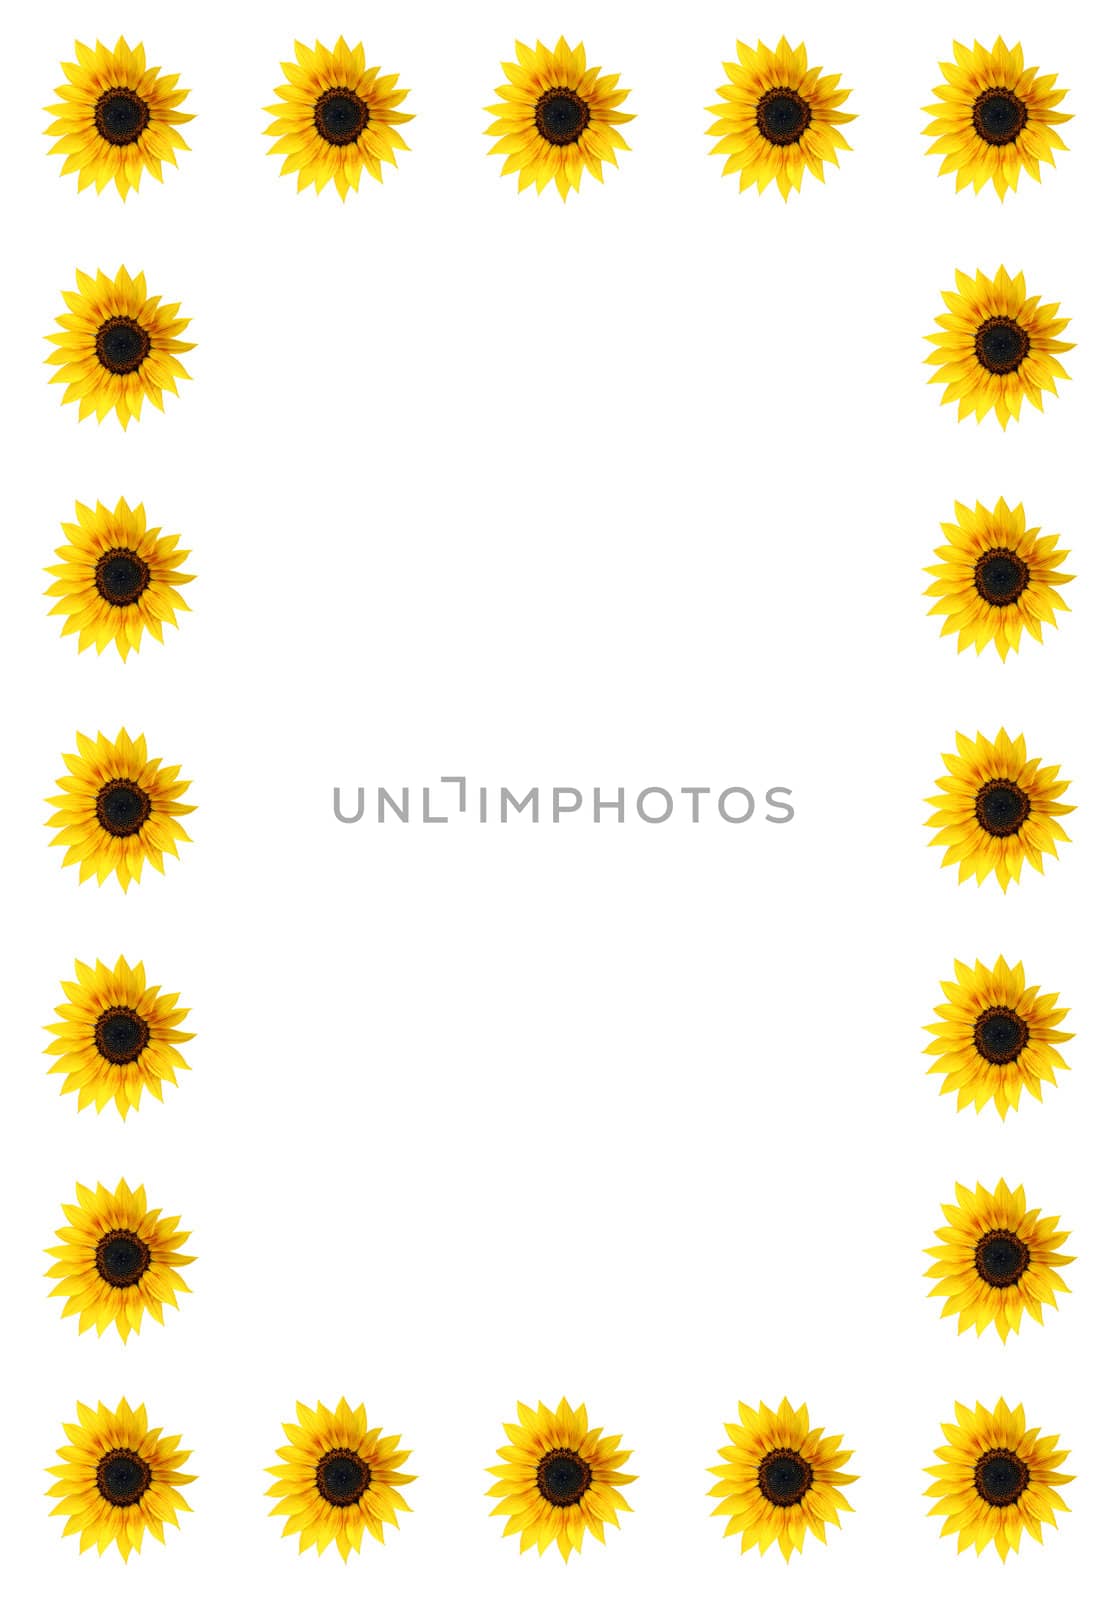 Sunflower border by monner